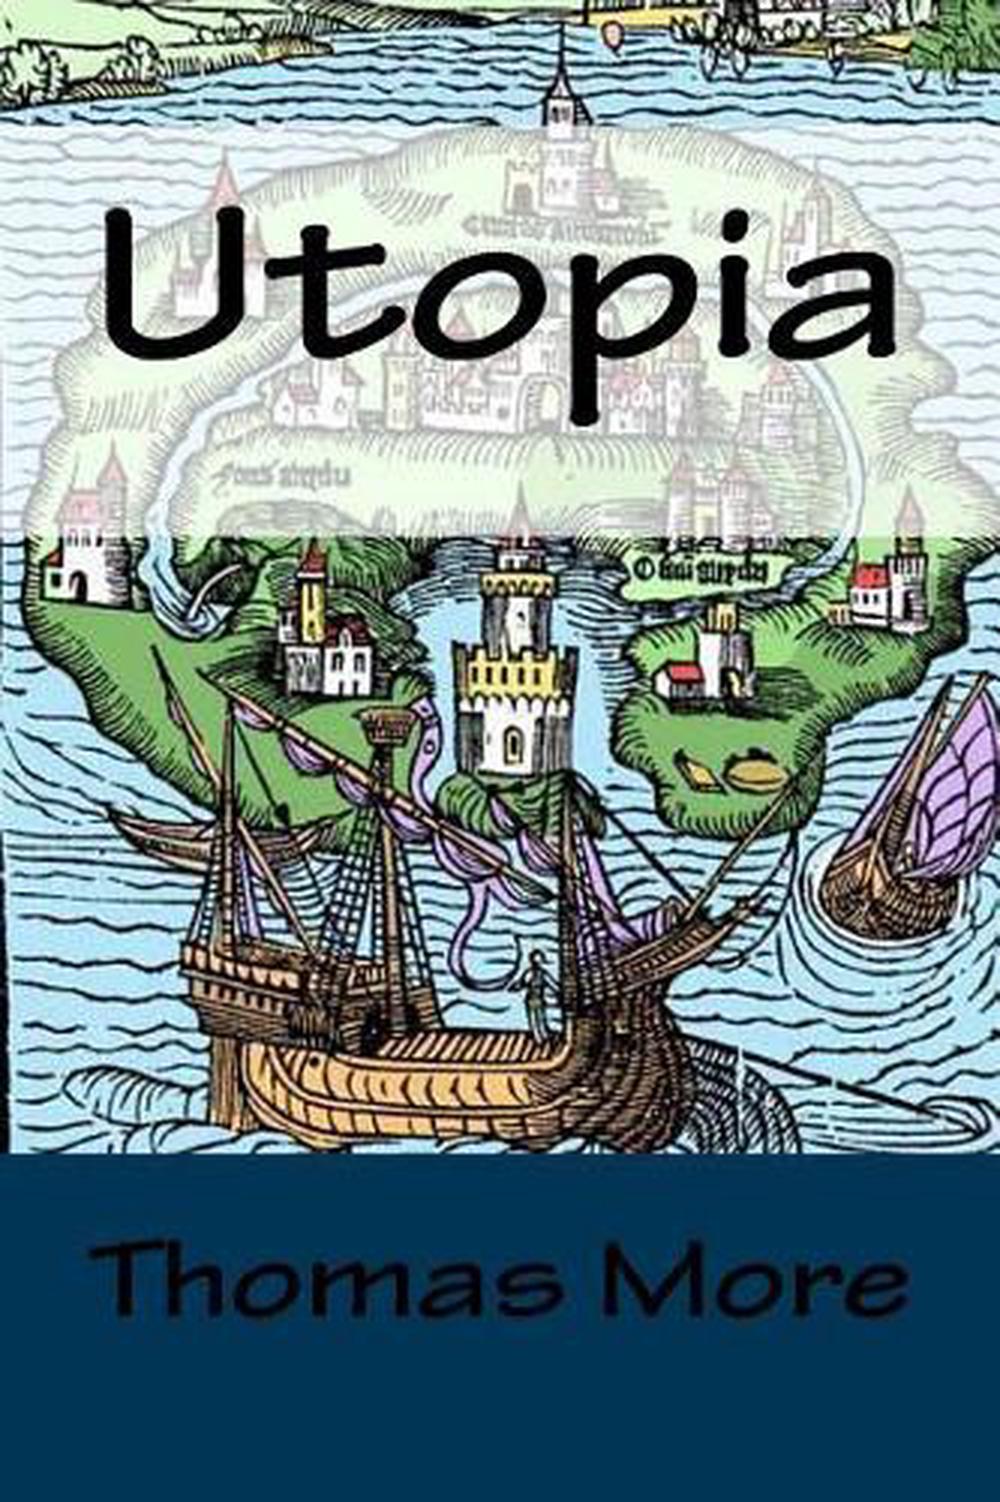 thomas more utopia book 1 and 2